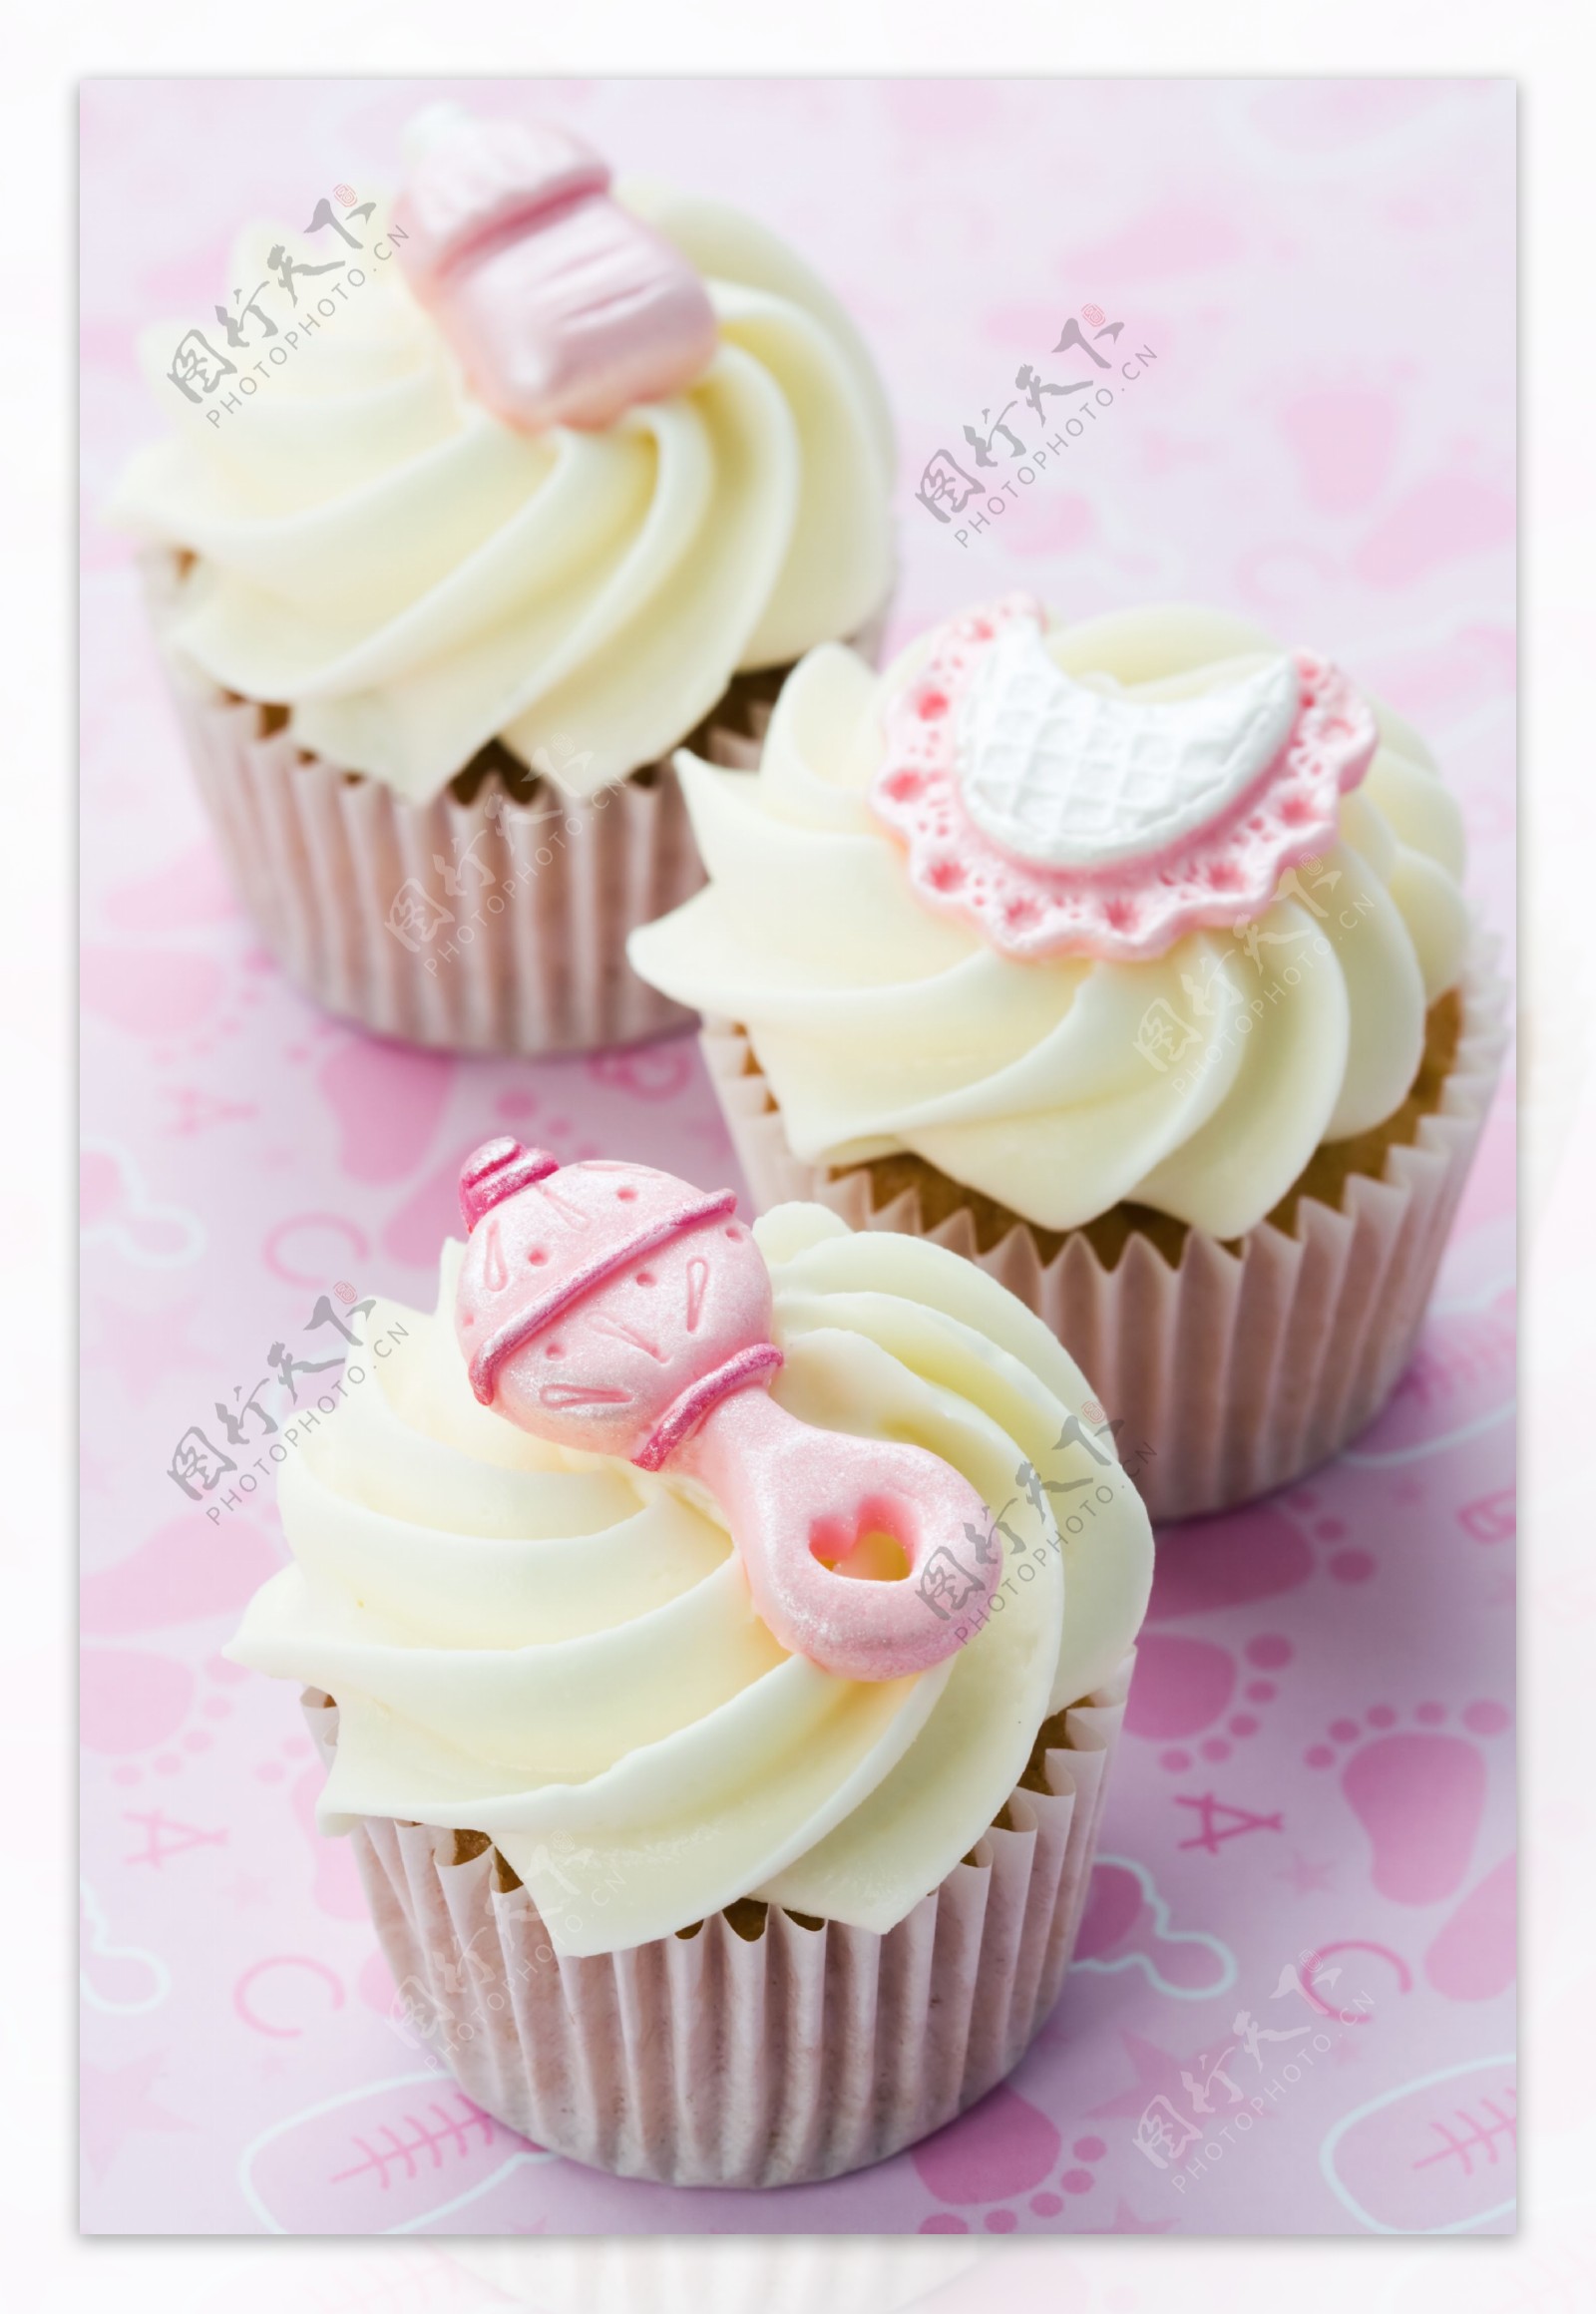 白色奶油粉色蛋糕图片